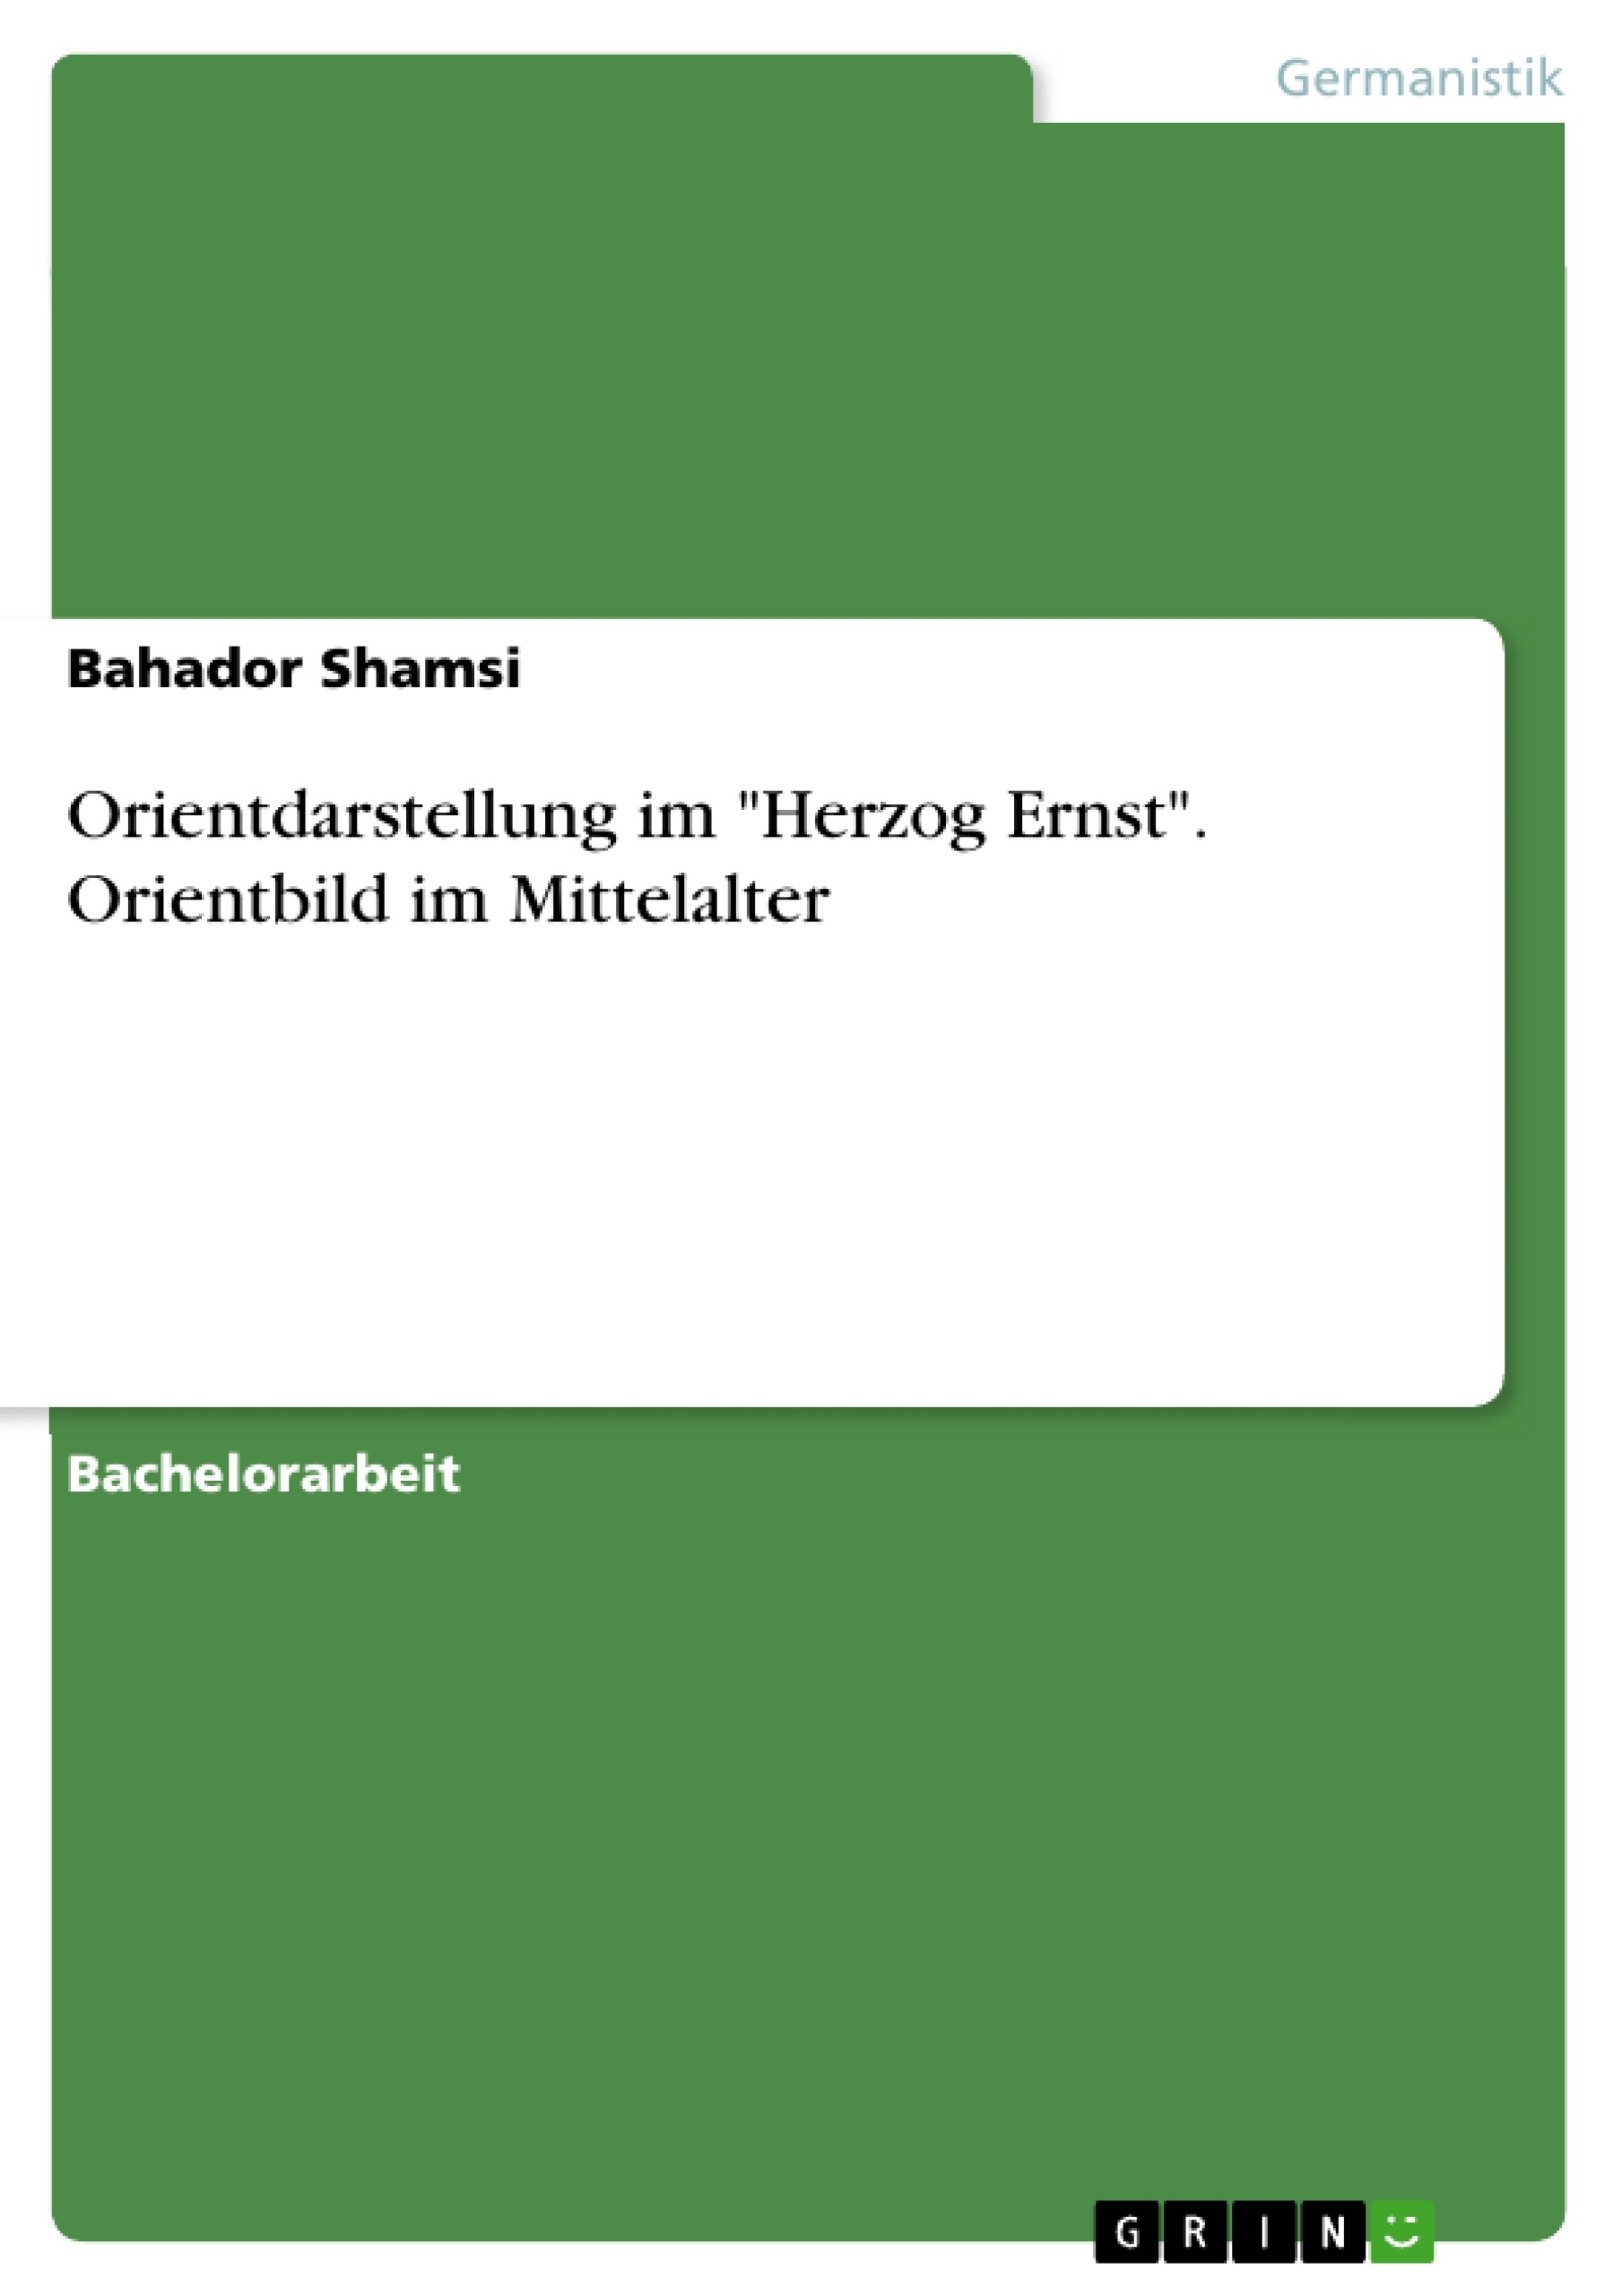 Title: Orientdarstellung im "Herzog Ernst". Orientbild im Mittelalter